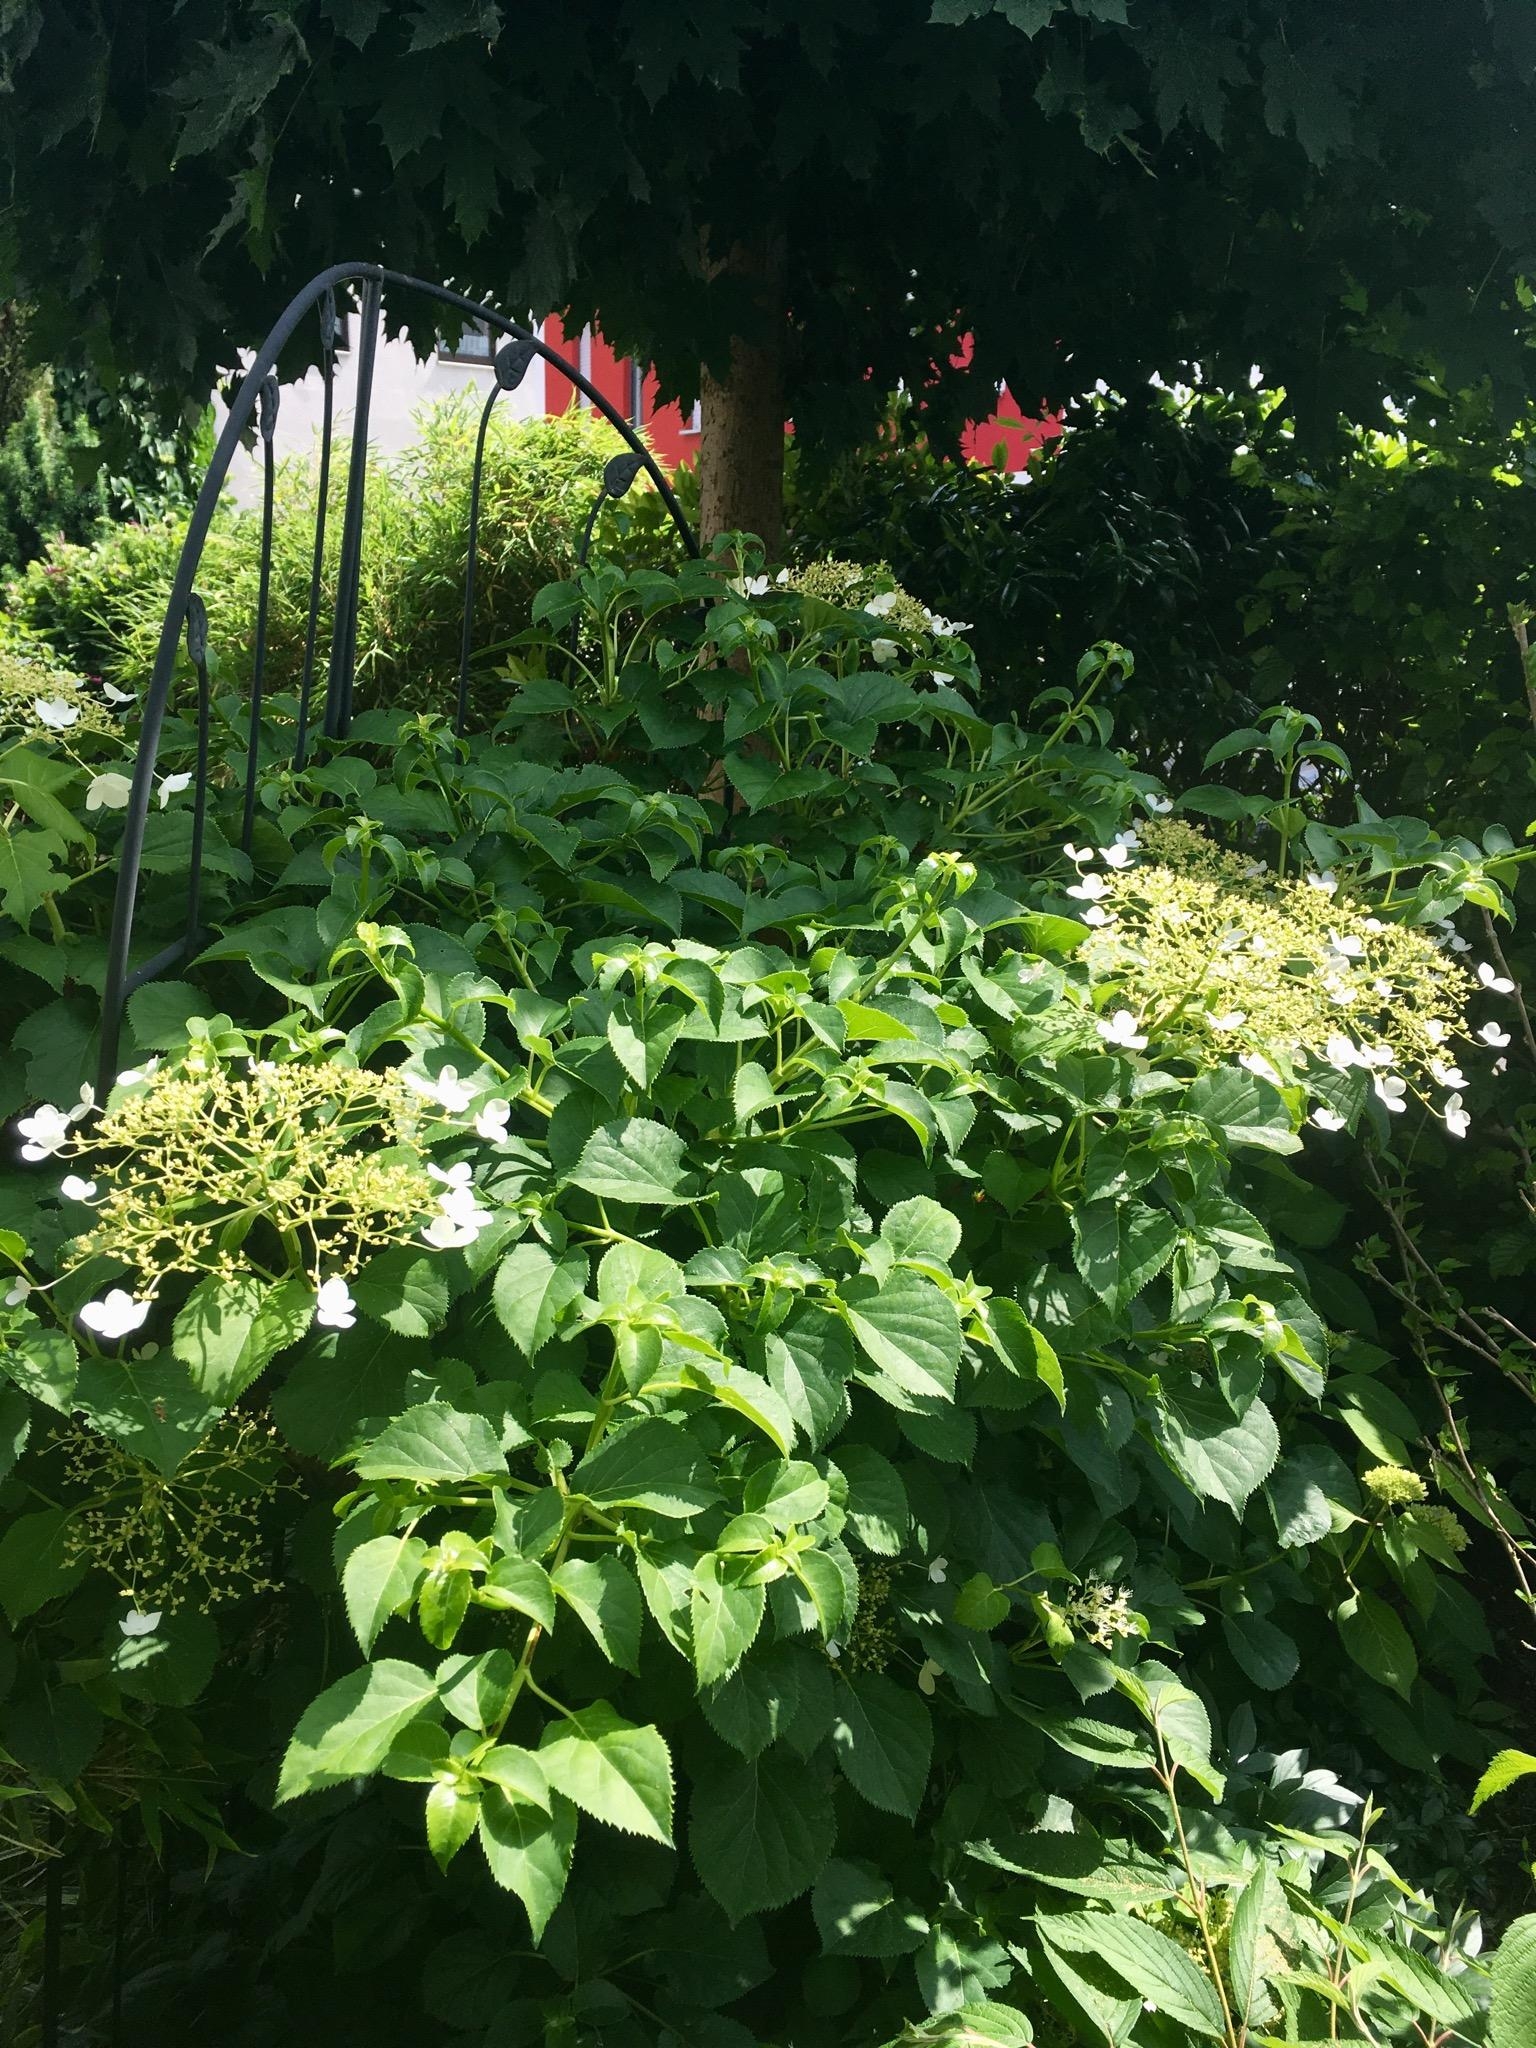 Meine Lieblings-Hortensie ist unsere weiße Kletterhortensie mit ihren zarten Blüten 😍 #hortensienwoche #gartenglück